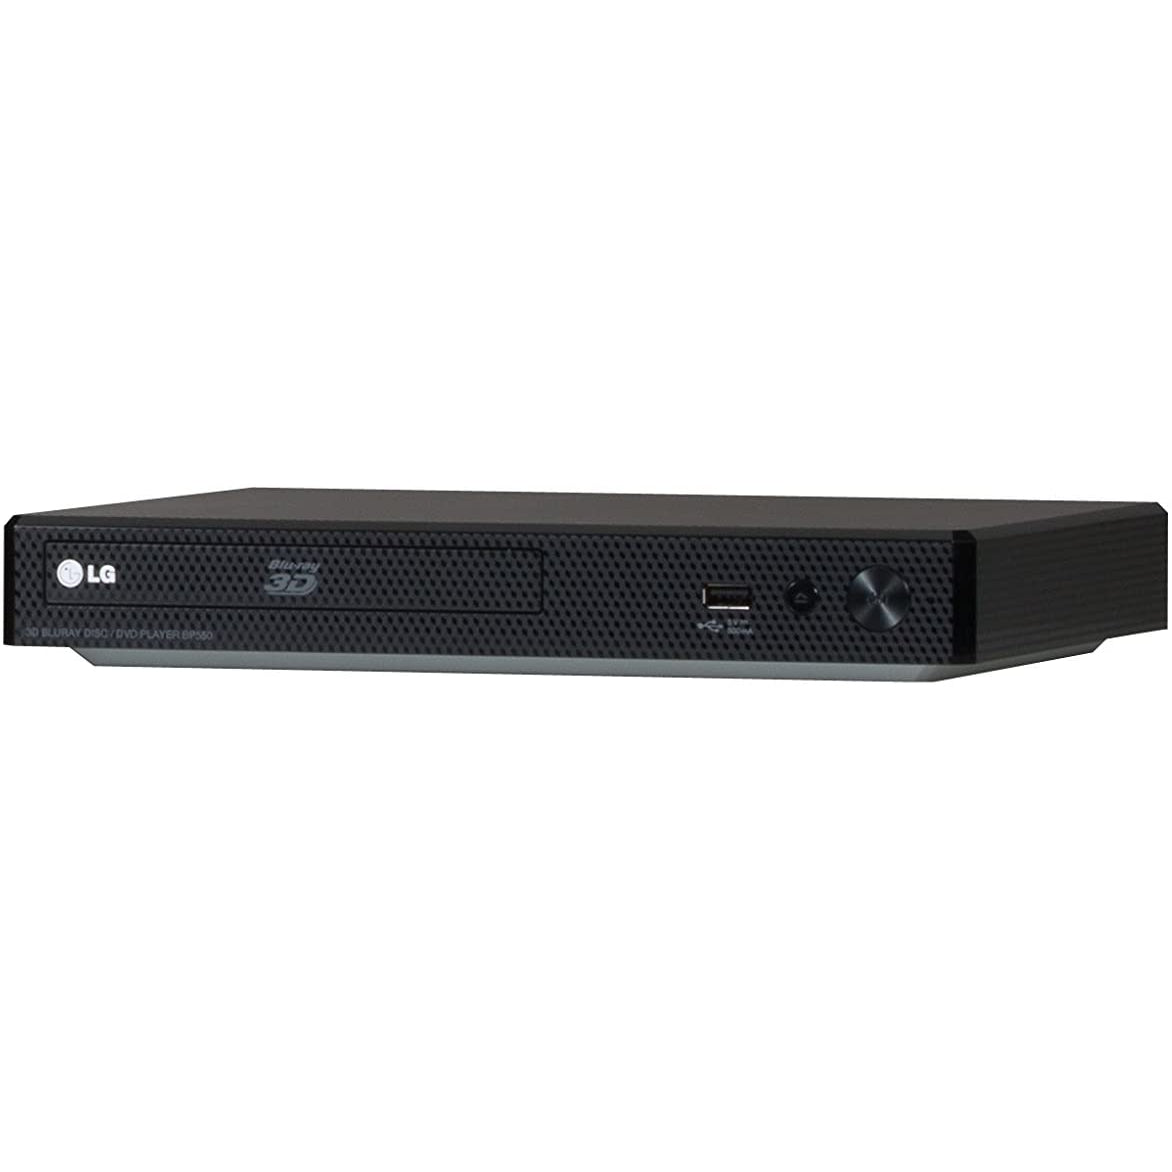 LG BP556 Network 3D Blu-ray Player - Black